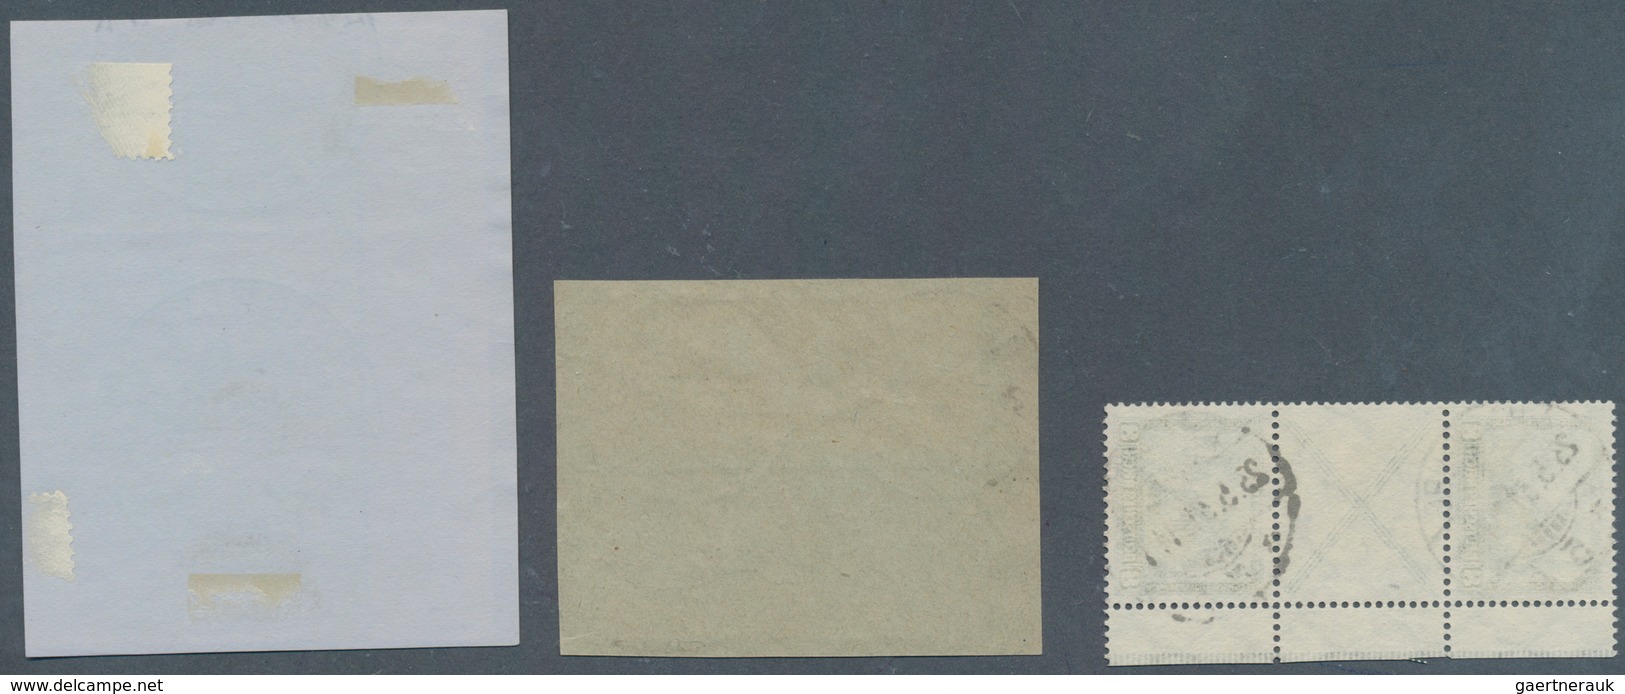 Deutsches Reich - Zusammendrucke: 1930, 8 Pfg. + X + 8 Pfg. Nothilfe, Senkrechter Zusammendruck, Not - Se-Tenant